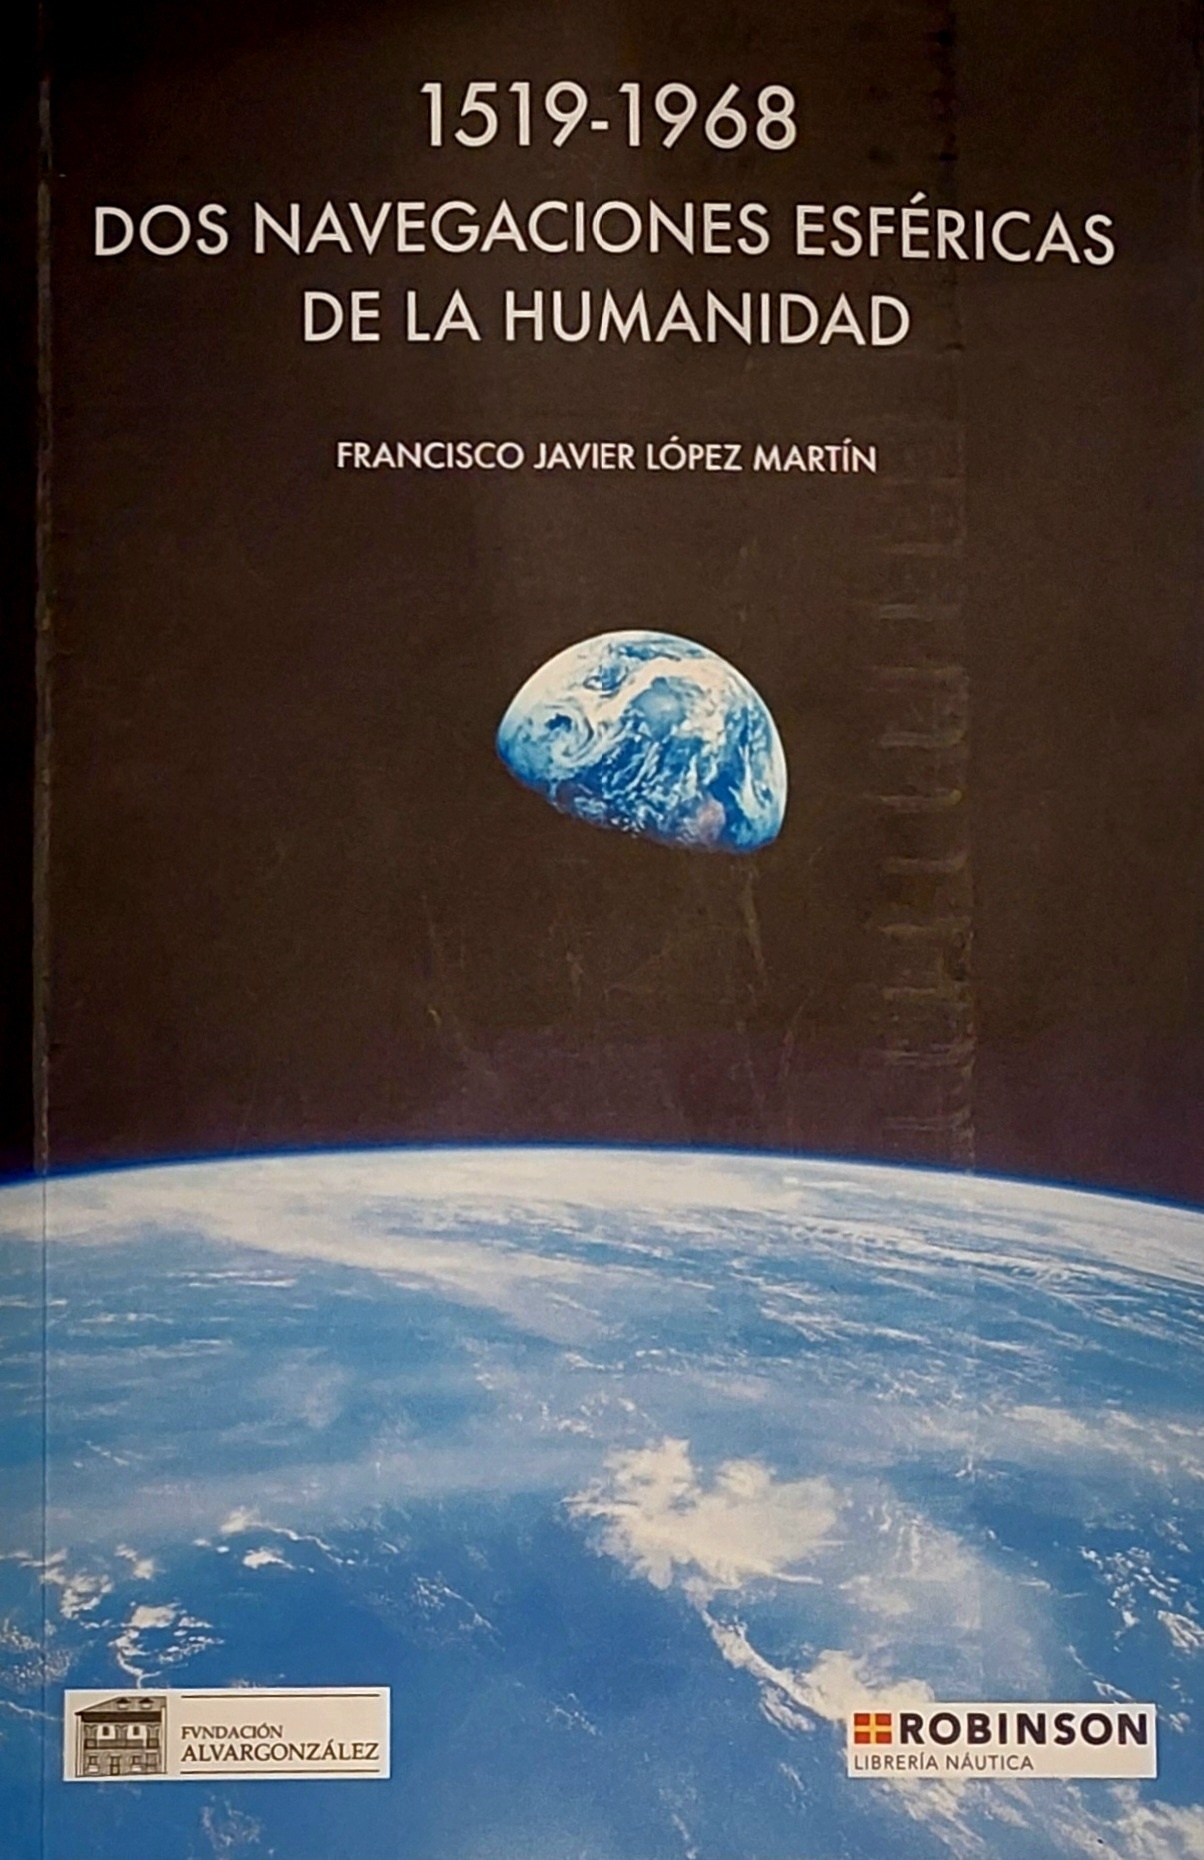 1519-1968 Dos navegaciones esféricas de la humanidad